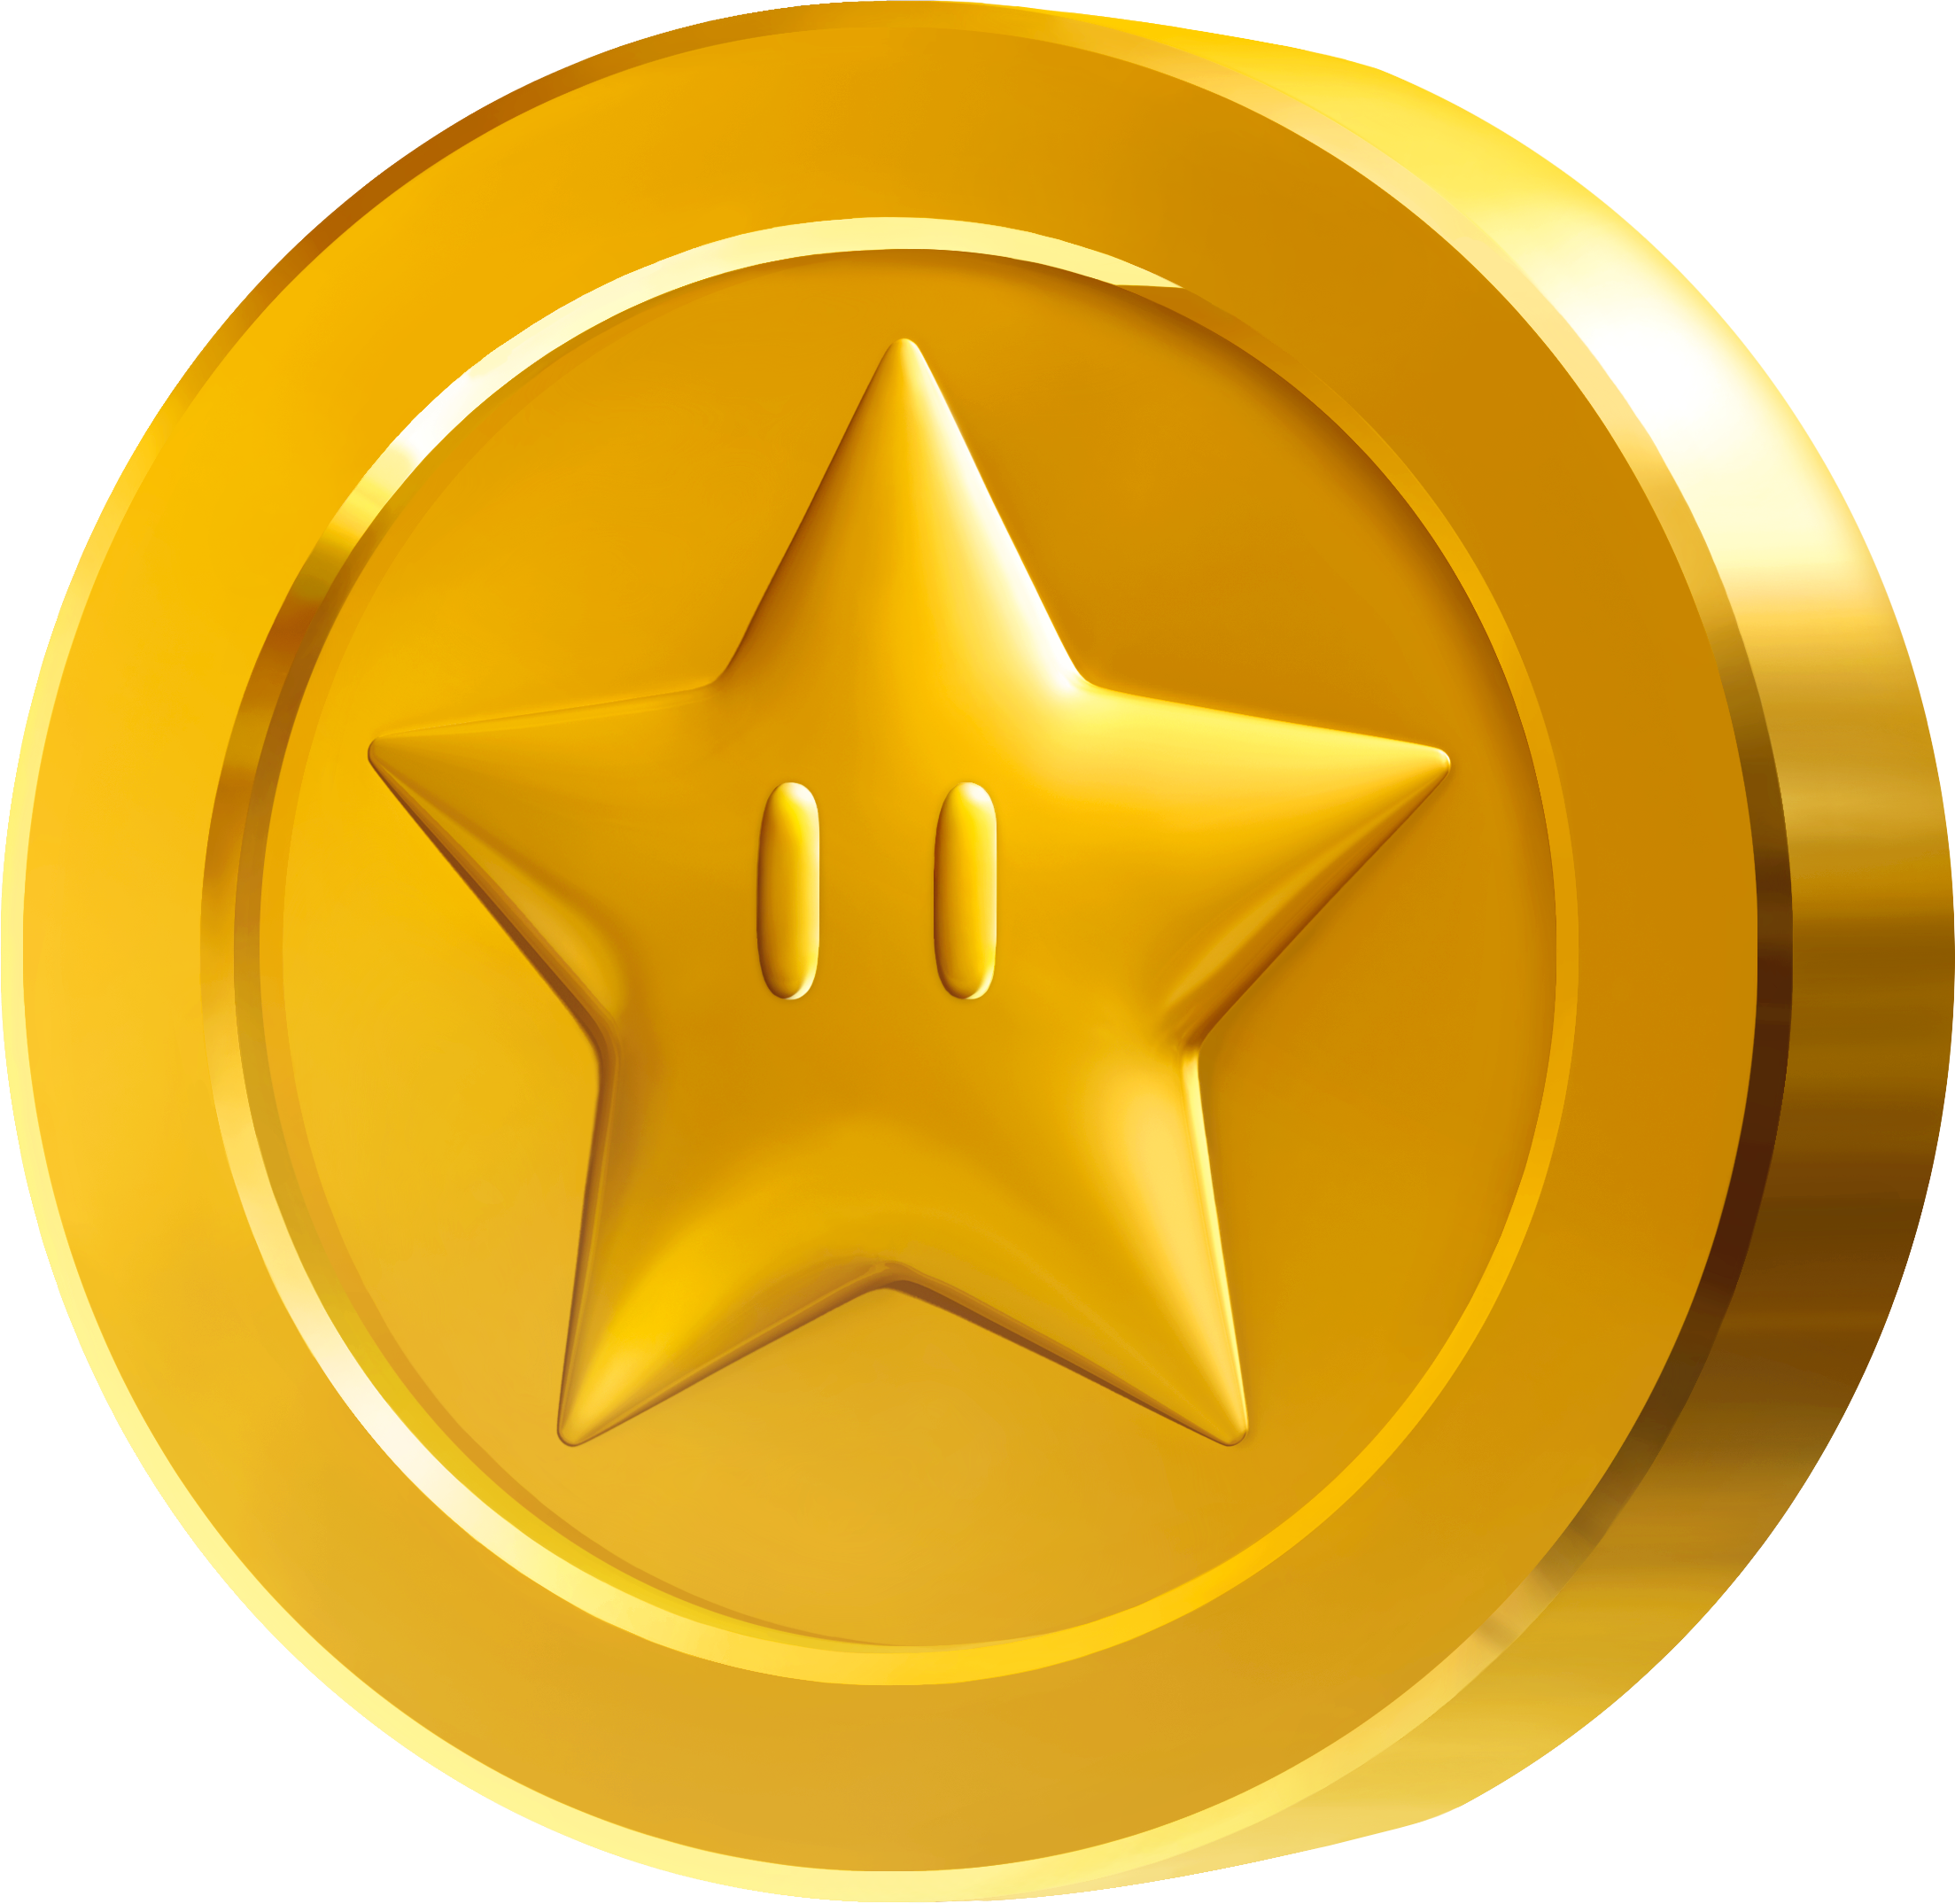 Mario Bros Coins Clipart - Mario Star Coin (2207x2149)